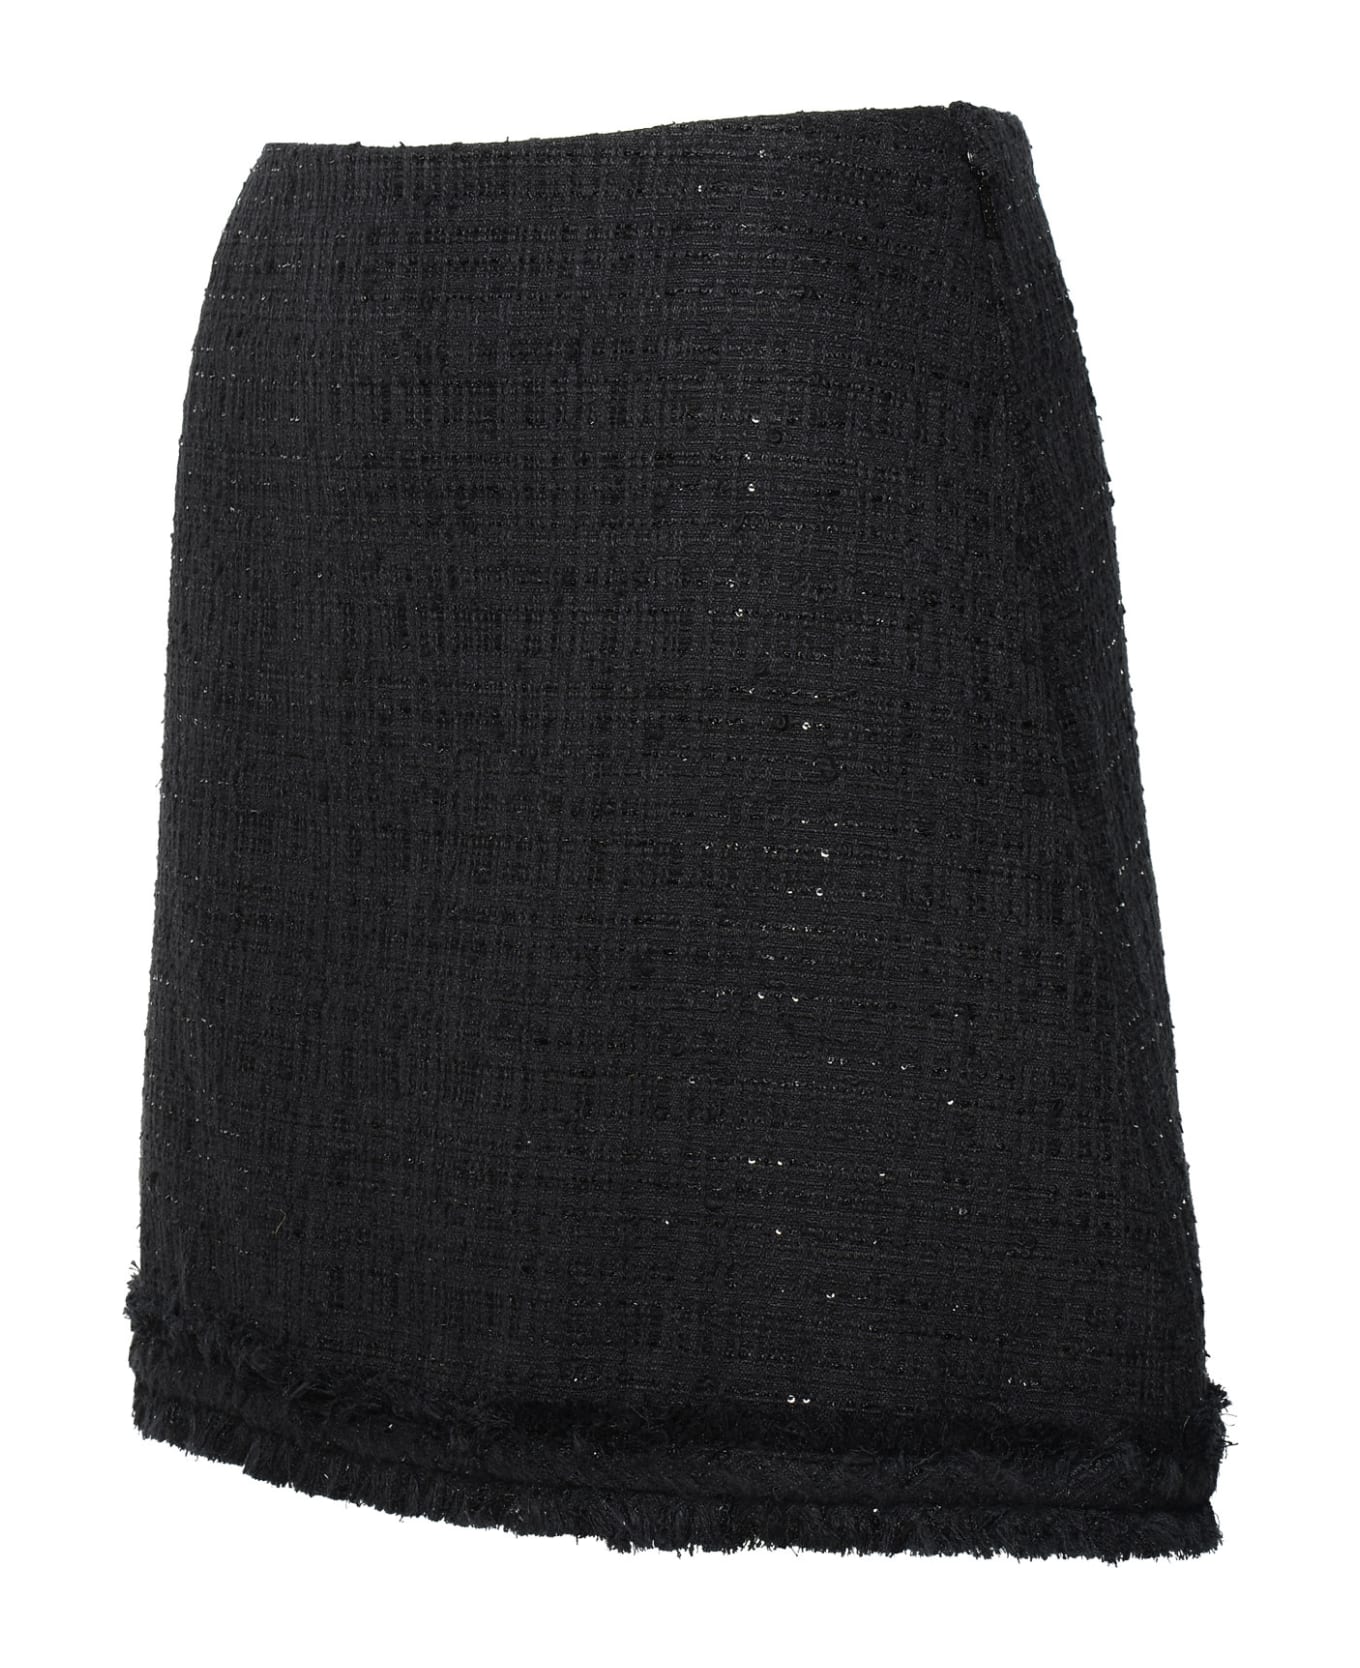 Versace Black Cotton Blend Miniskirt - Black スカート